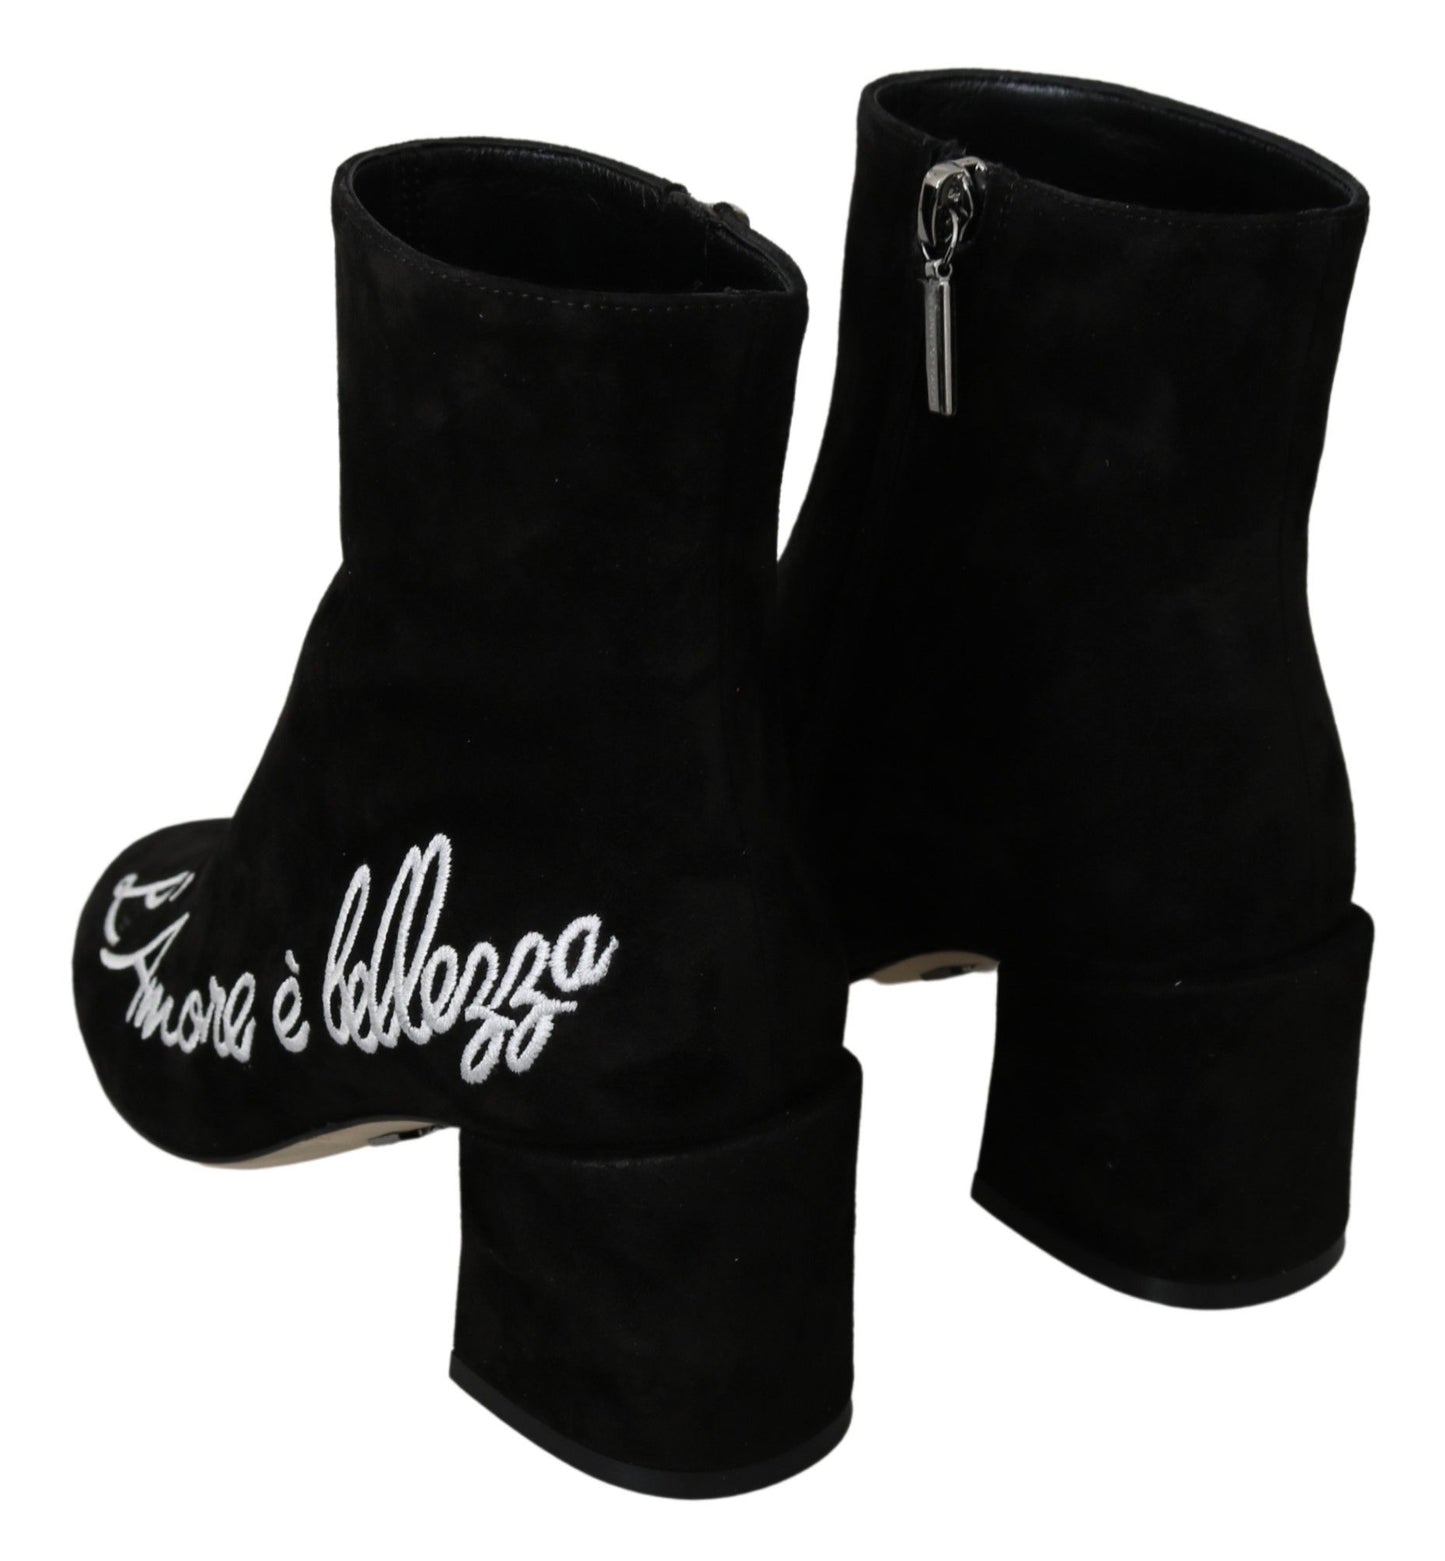 Dolce & Gabbana Black Suede L'Amore E'Bellezza Boots Shoes